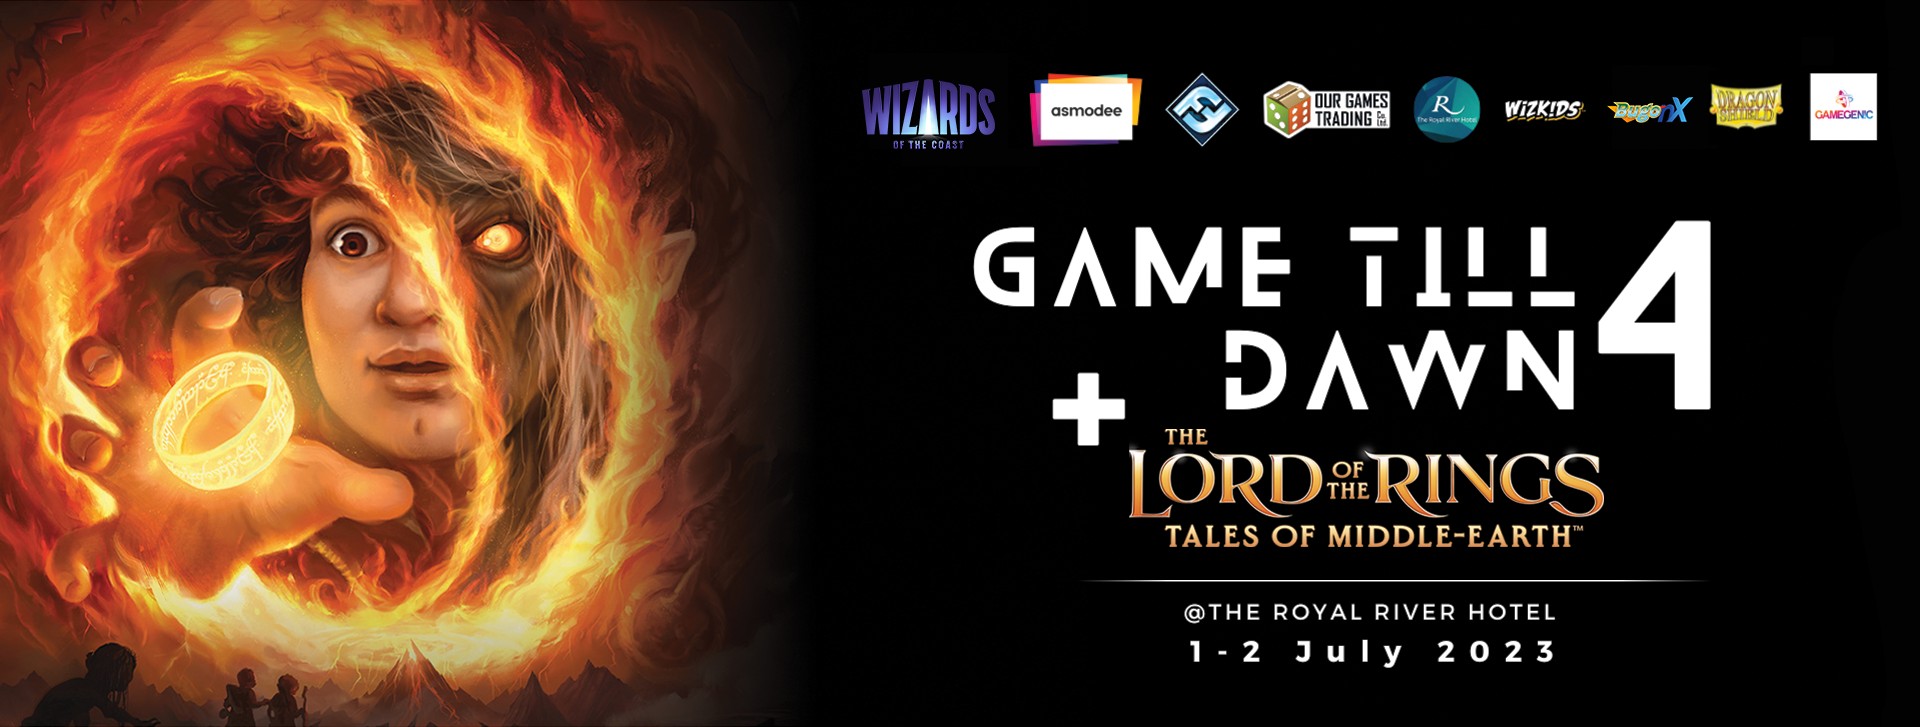 สรุปงาน Game Till Dawn 4 + The Lord of the Ring Carnival บรรยากาศคึกคักทั้งการ์ดและบอร์ดเกม